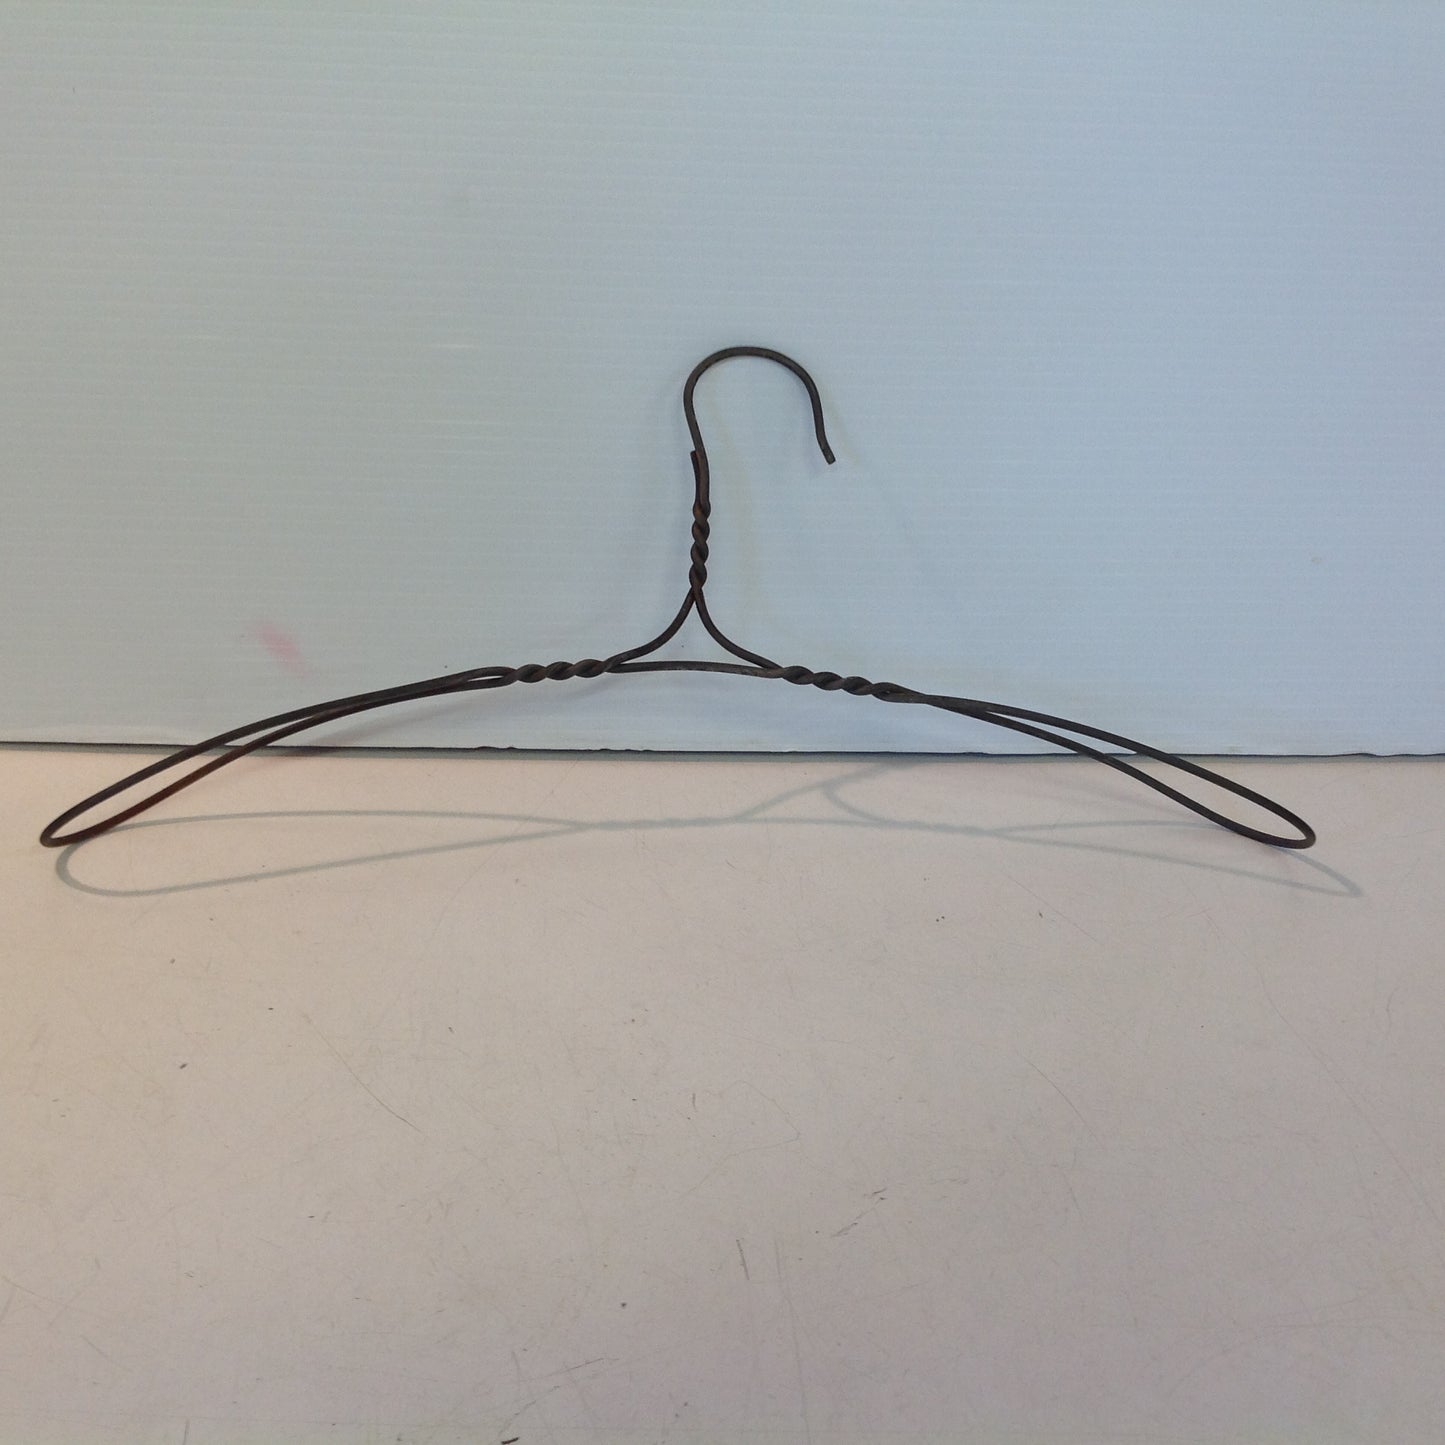 Antique 1900-20's Vintage Twist Wire Clothes Hanger